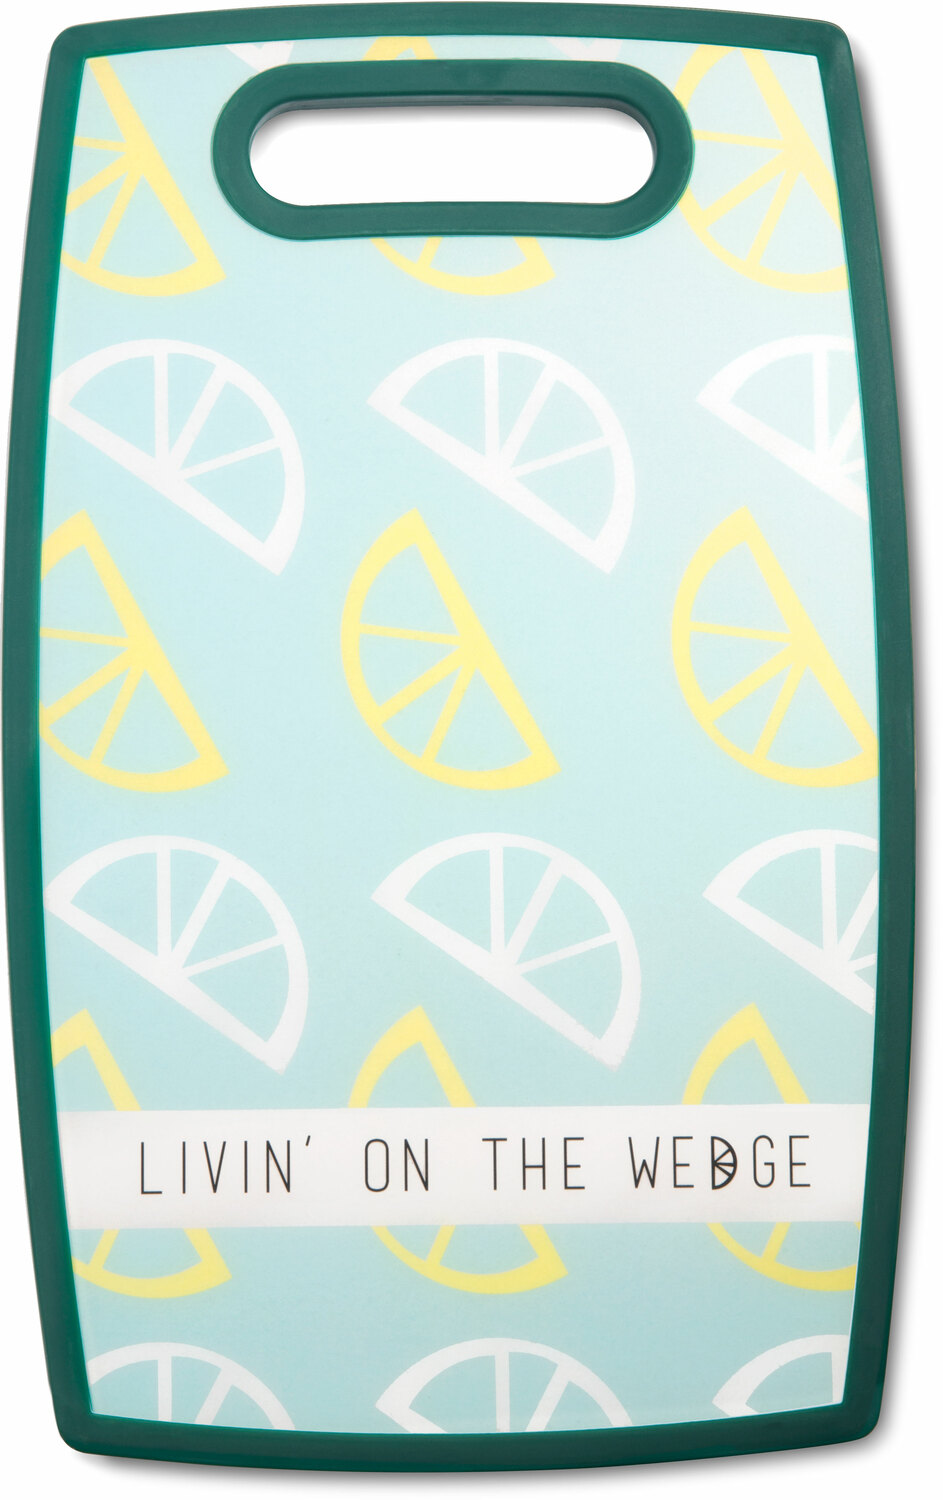 Livin' on the Wedge by Livin' on the Wedge - Livin' on the Wedge - 9" x 14.5" Cutting Board